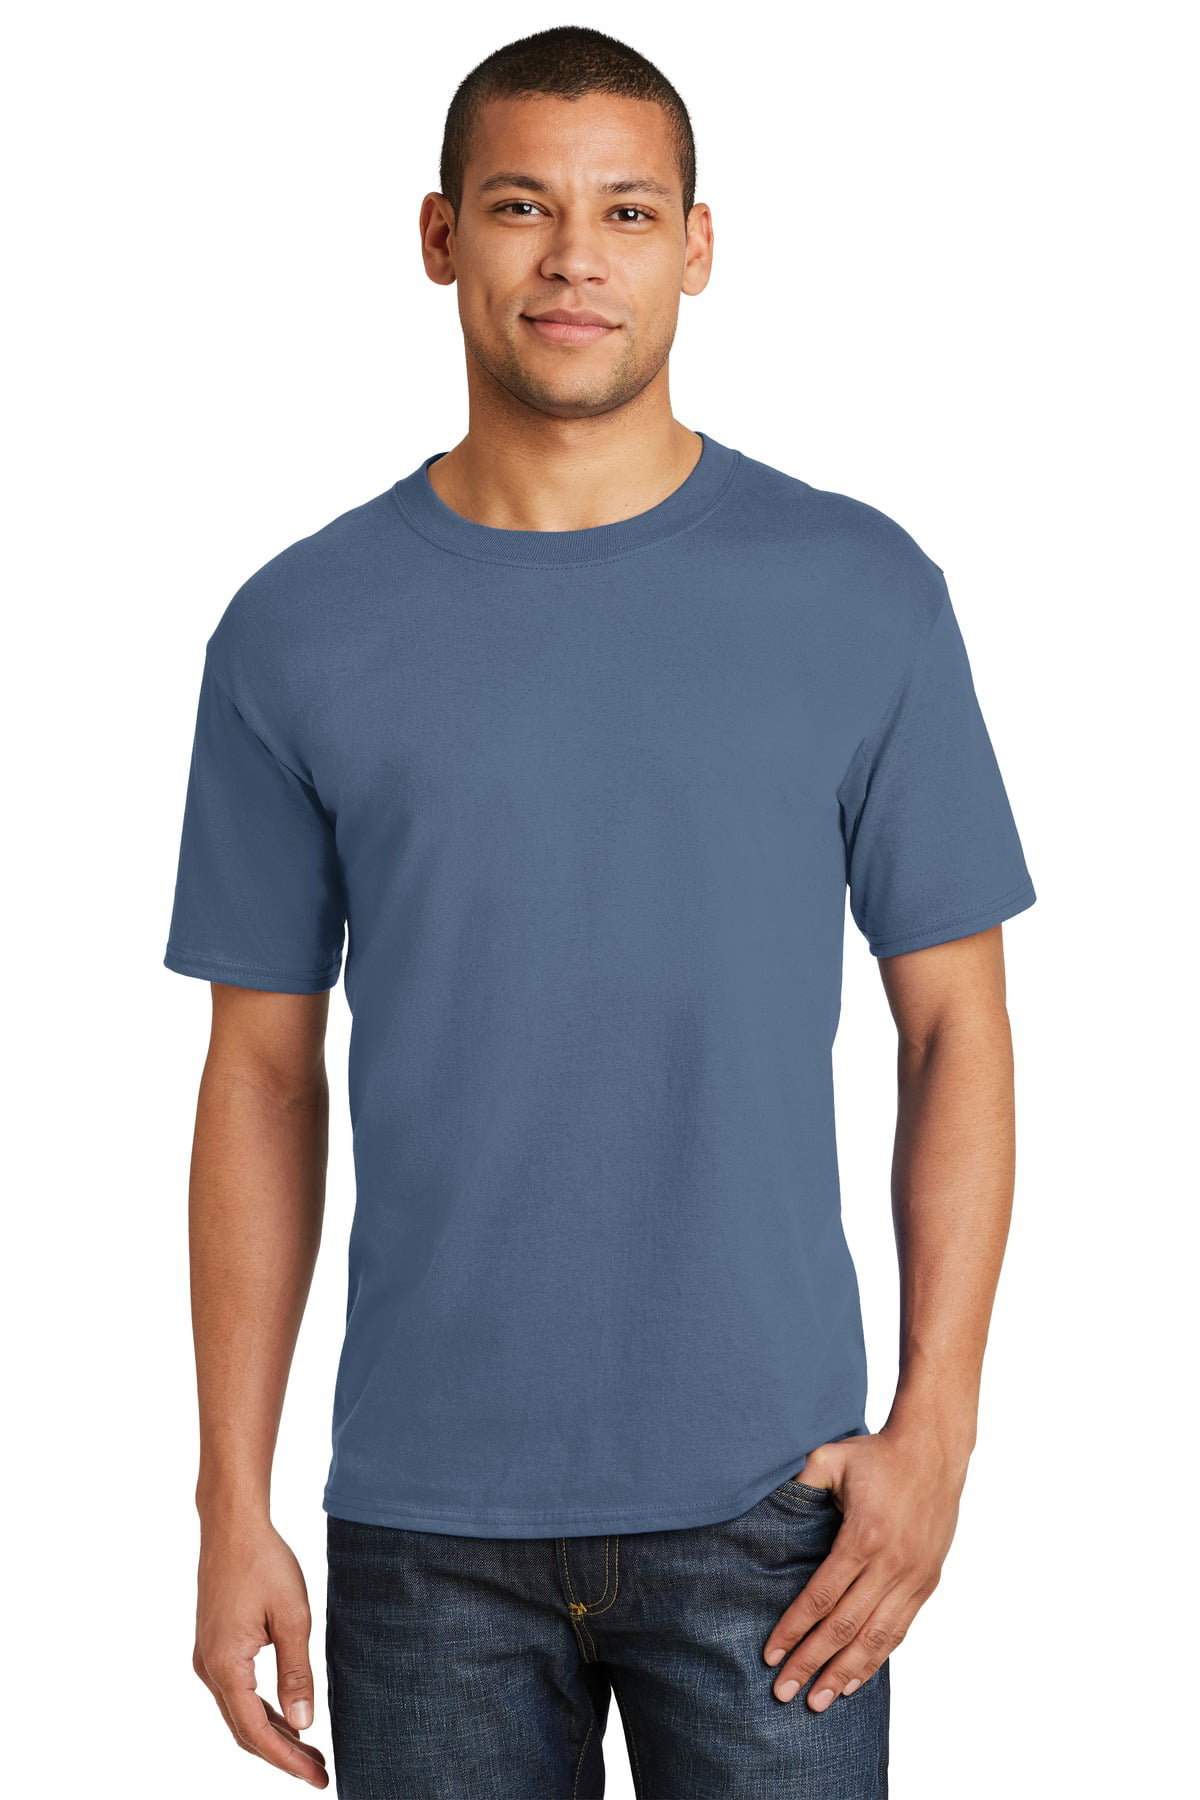 Hanes Men's 100 Percent Cotton Crew Neck T-Shirt 5180 - Walmart.com